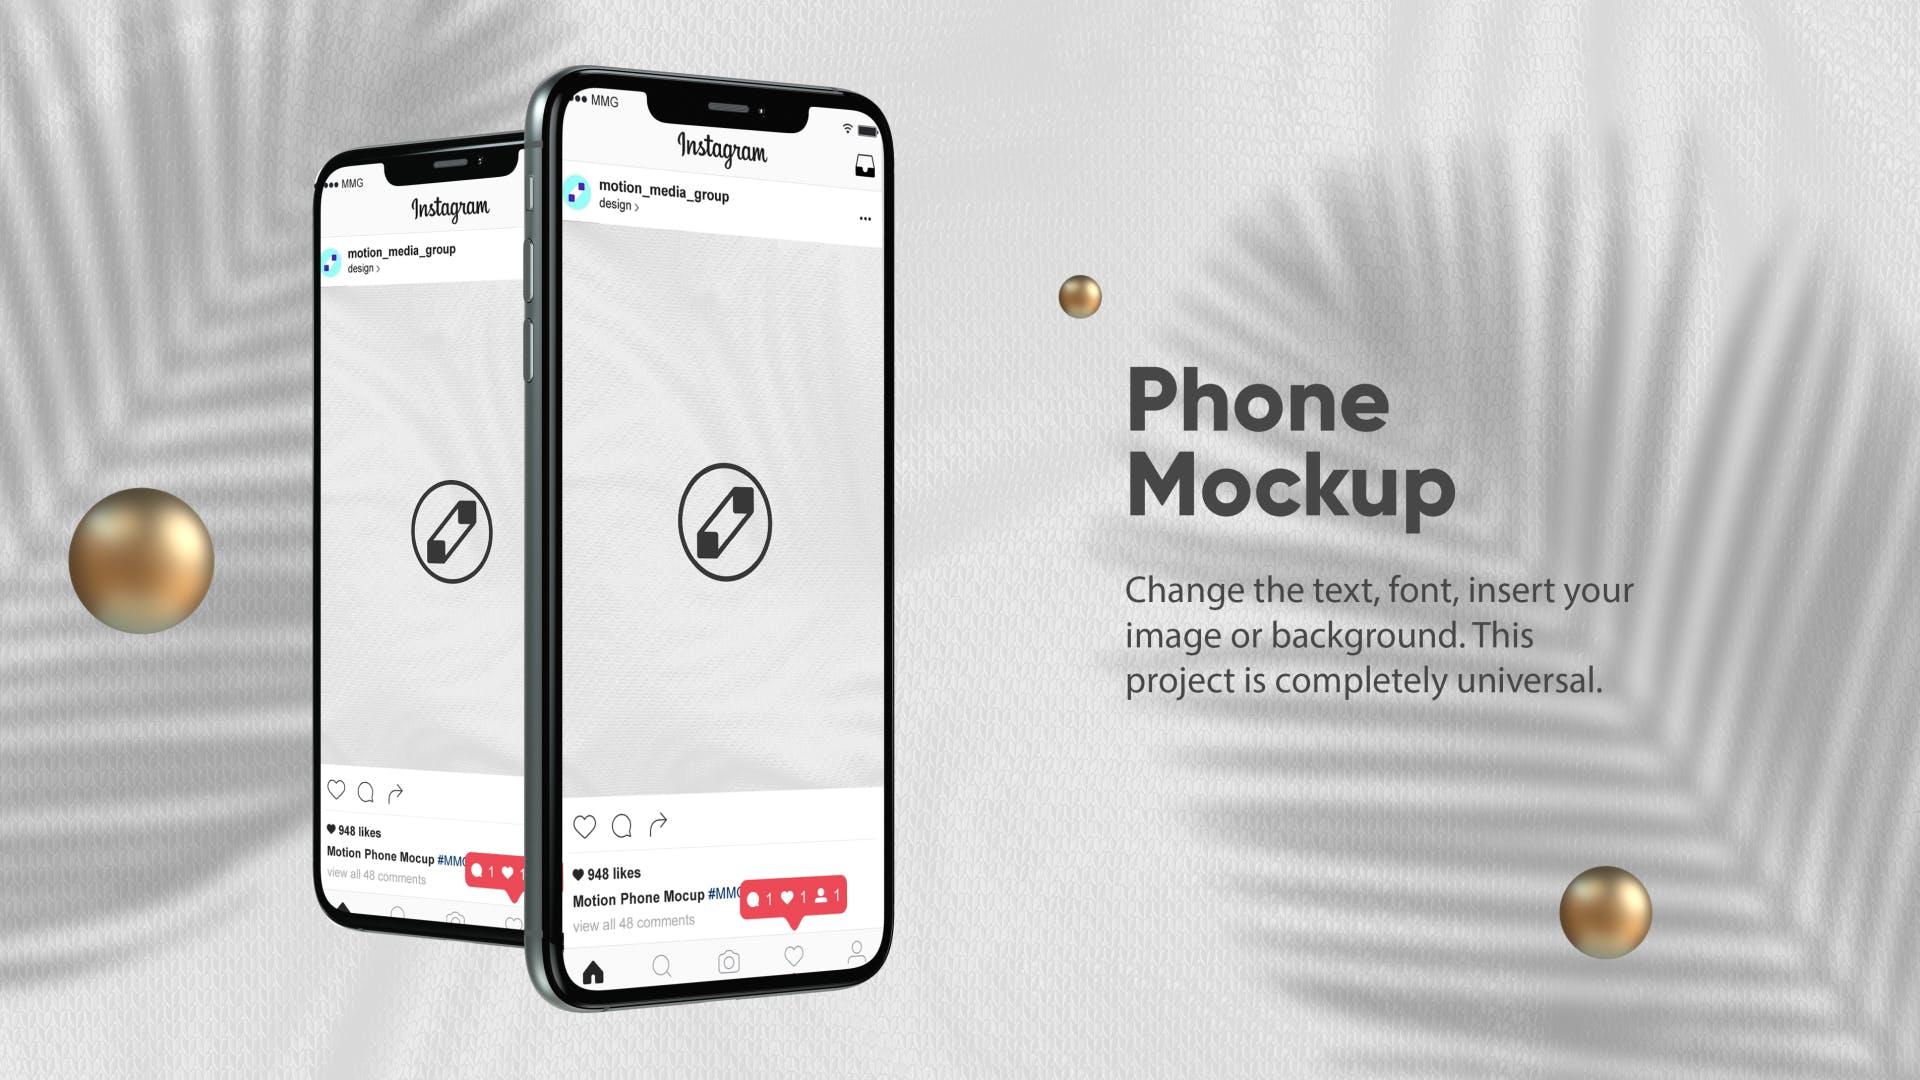 优雅时尚风格3D立体风格iPhone手机屏幕预览第一素材精选样机 10 Light Phone Mockups插图(2)